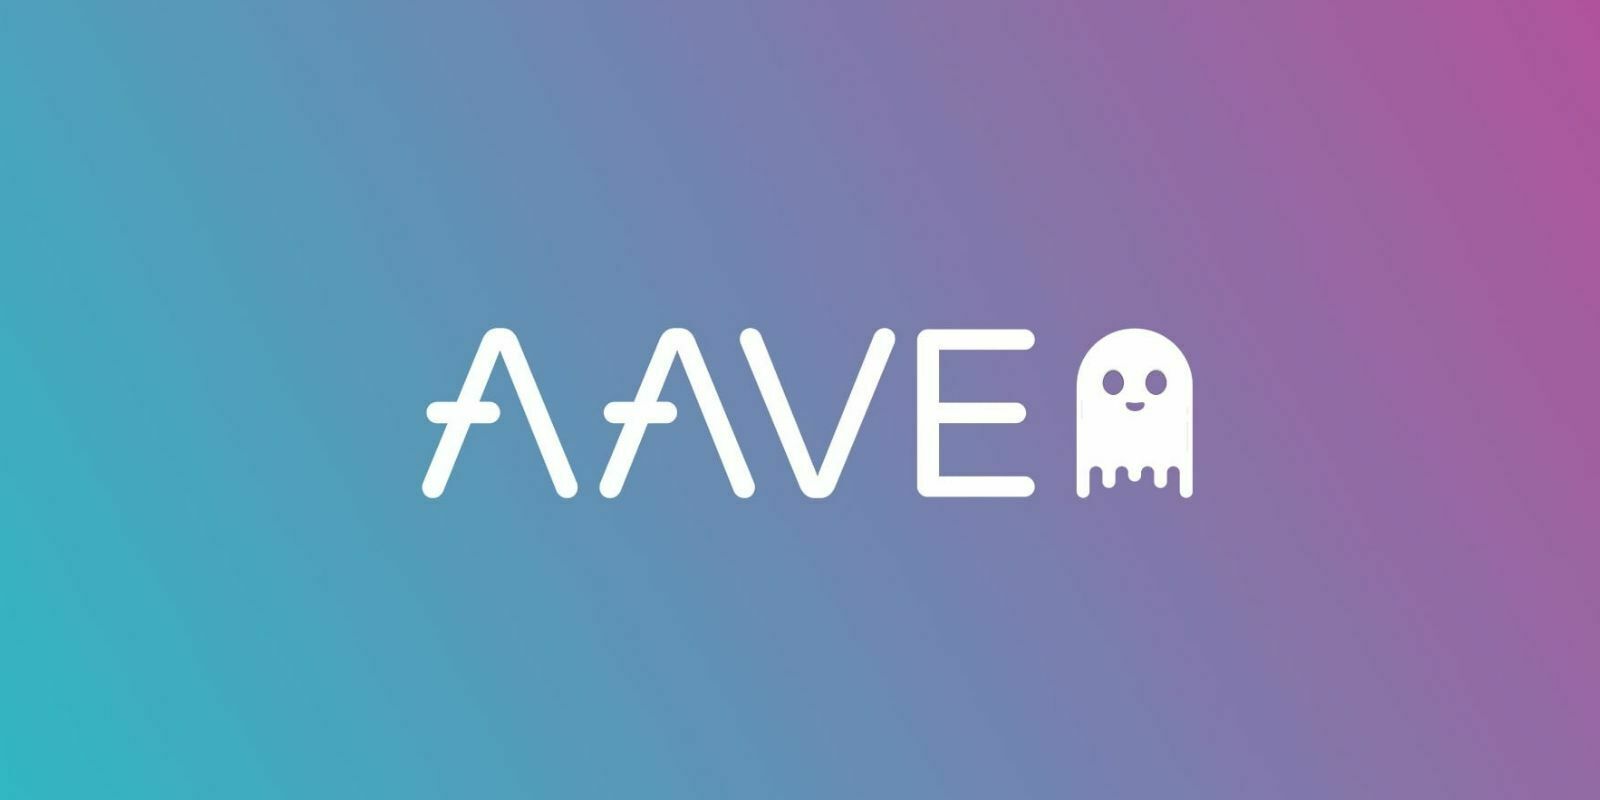 Aave va allouer 58M$ pour récompenser les utilisateurs du protocole